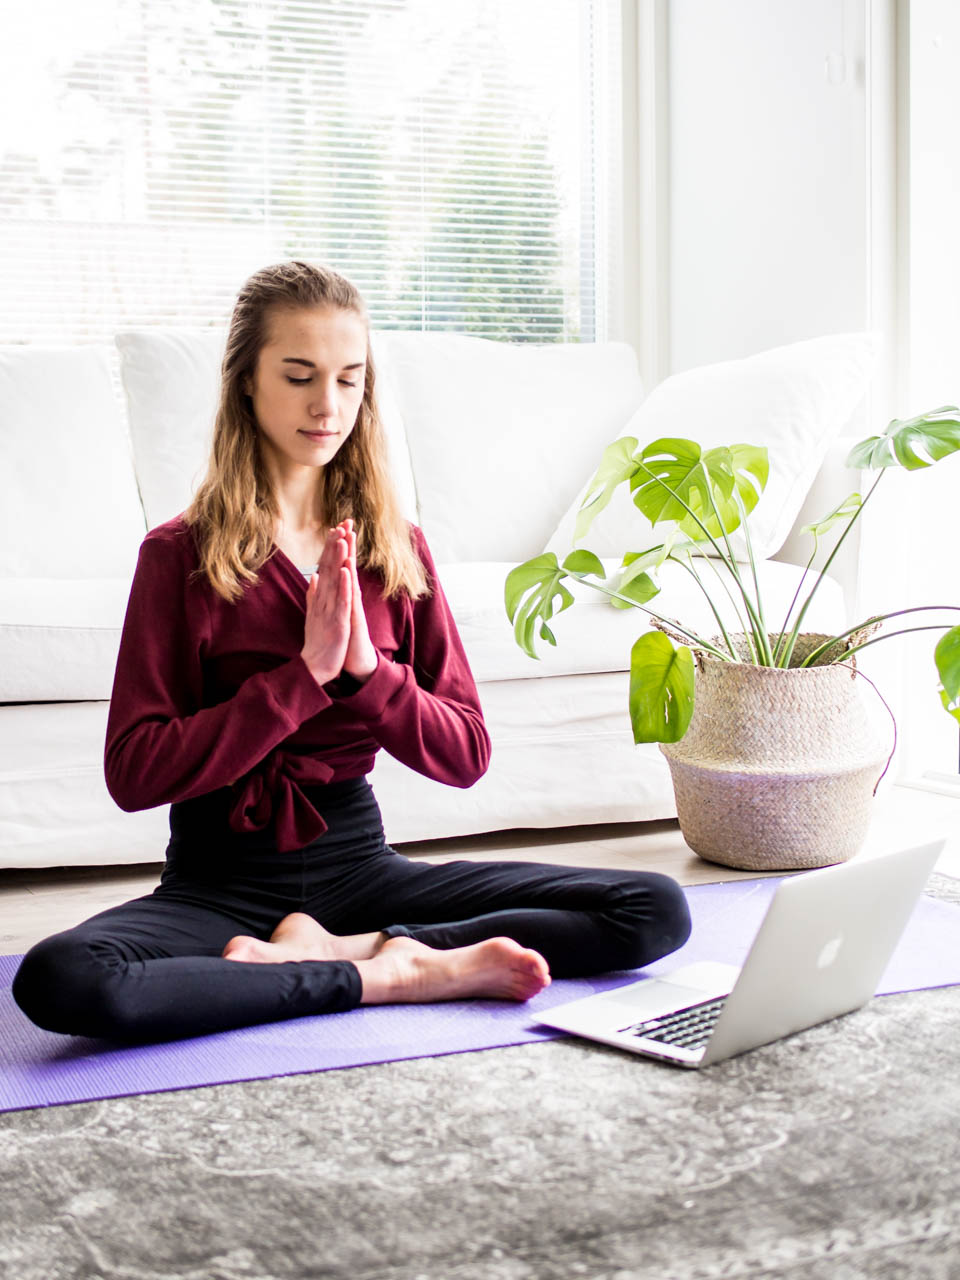 Free online yoga classes - Ilmaiset joogatunnit netissä